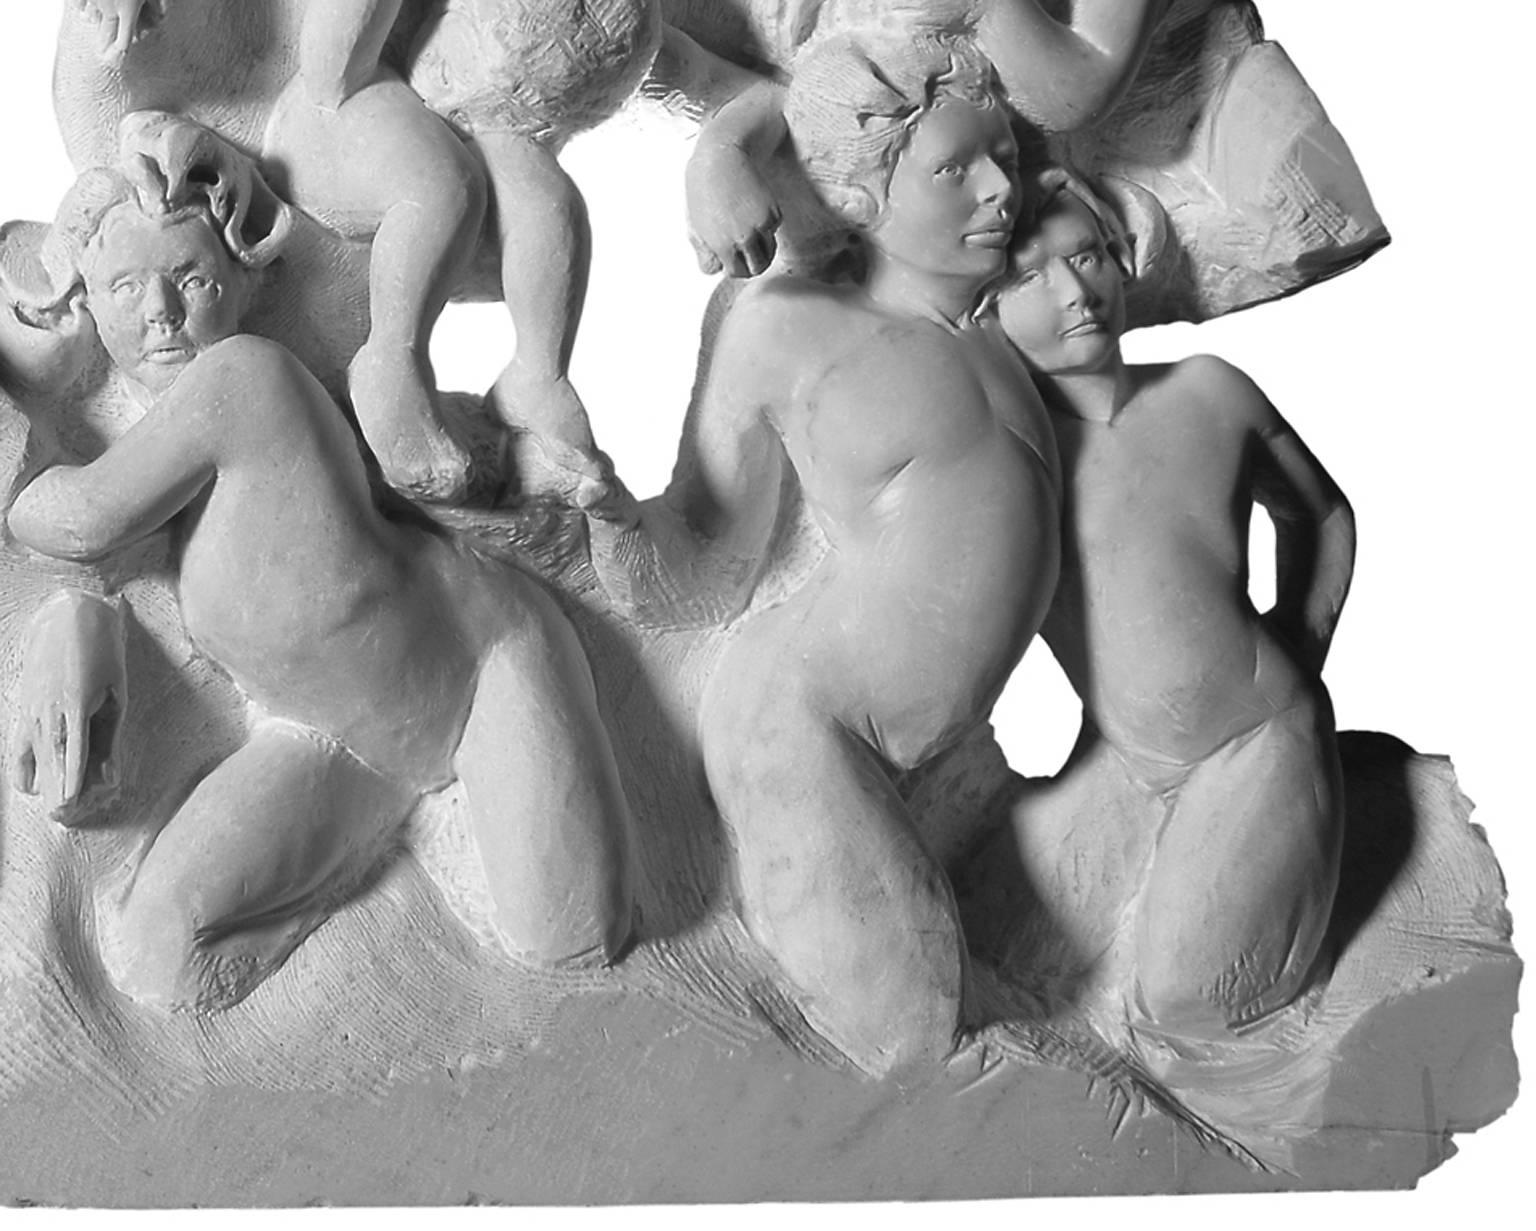 DANZA (Danse) de Lorenzo Vignoli
frise en marbre de Carrare sculptée à la main par le sculpteur italien contemporain Lorenzo Vignoli, incorporant des références classiques envoûtantes et des influences méditerranéennes contemporaines.

Dimensions de